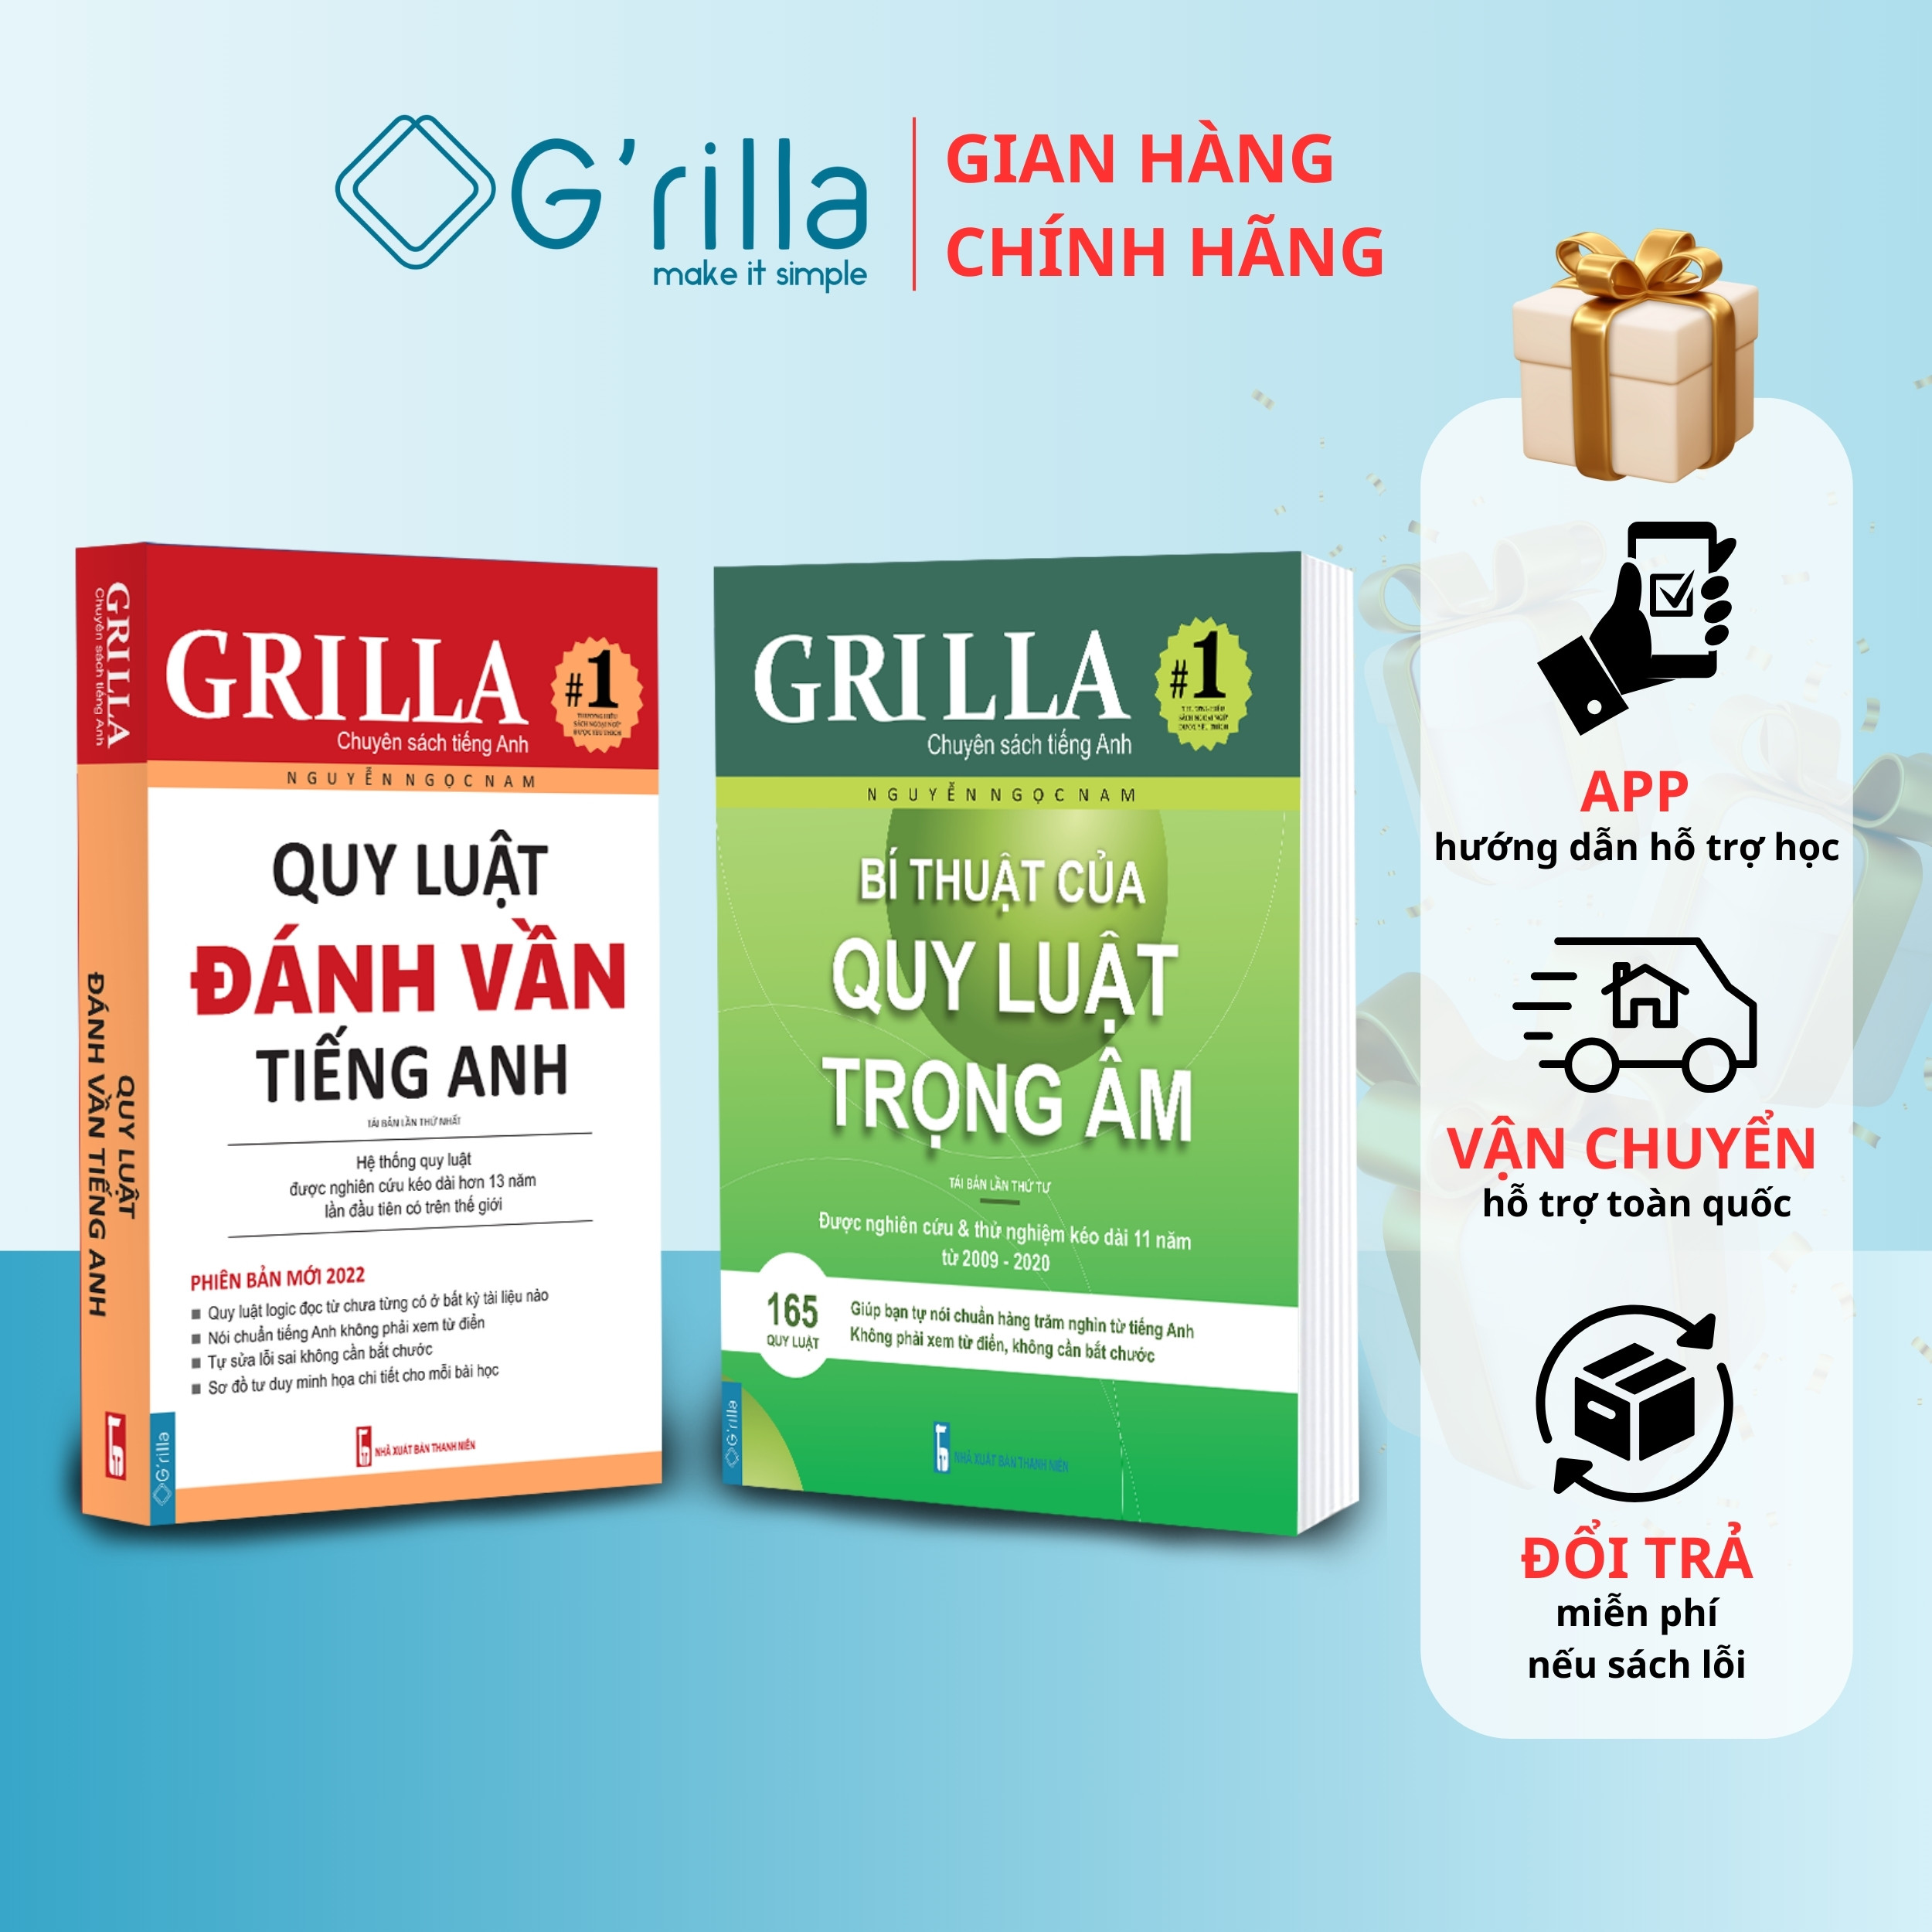 Sách combo bí thuật của quy luật trọng âm và quy luật đánh vần tiếng Anh, tặng app Grilla